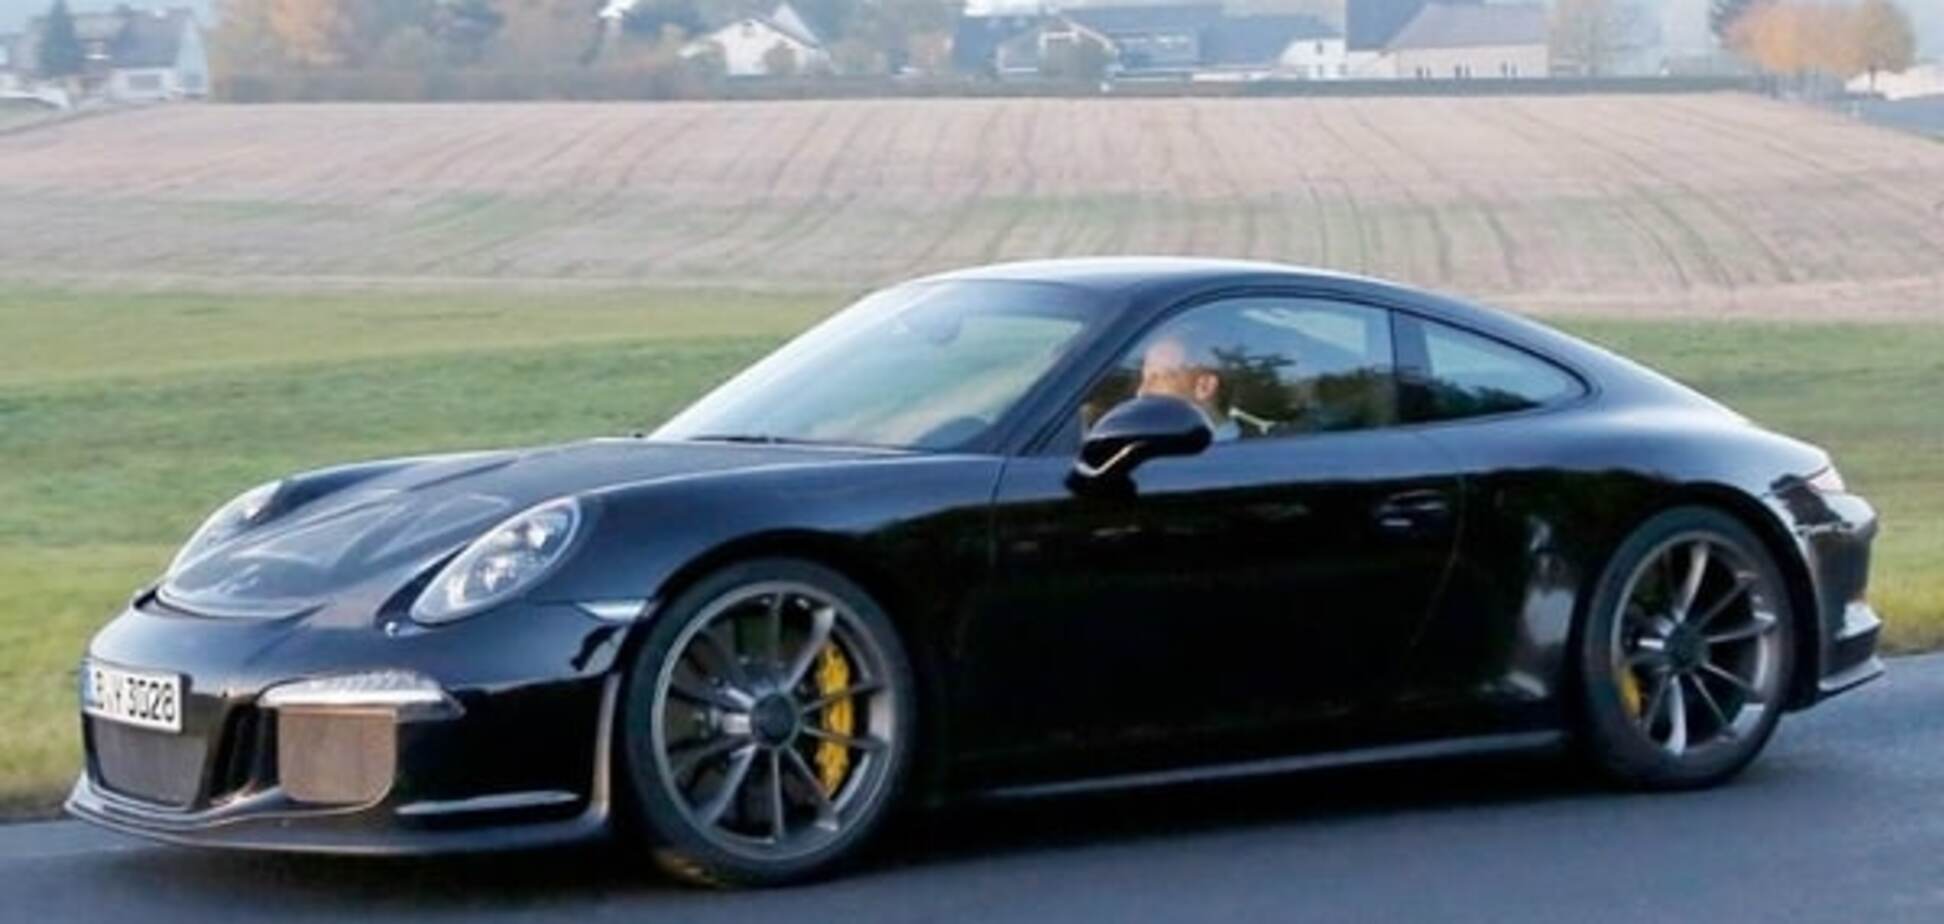 Фотошпигуни 'засвітили' новий спорткар від Porsche